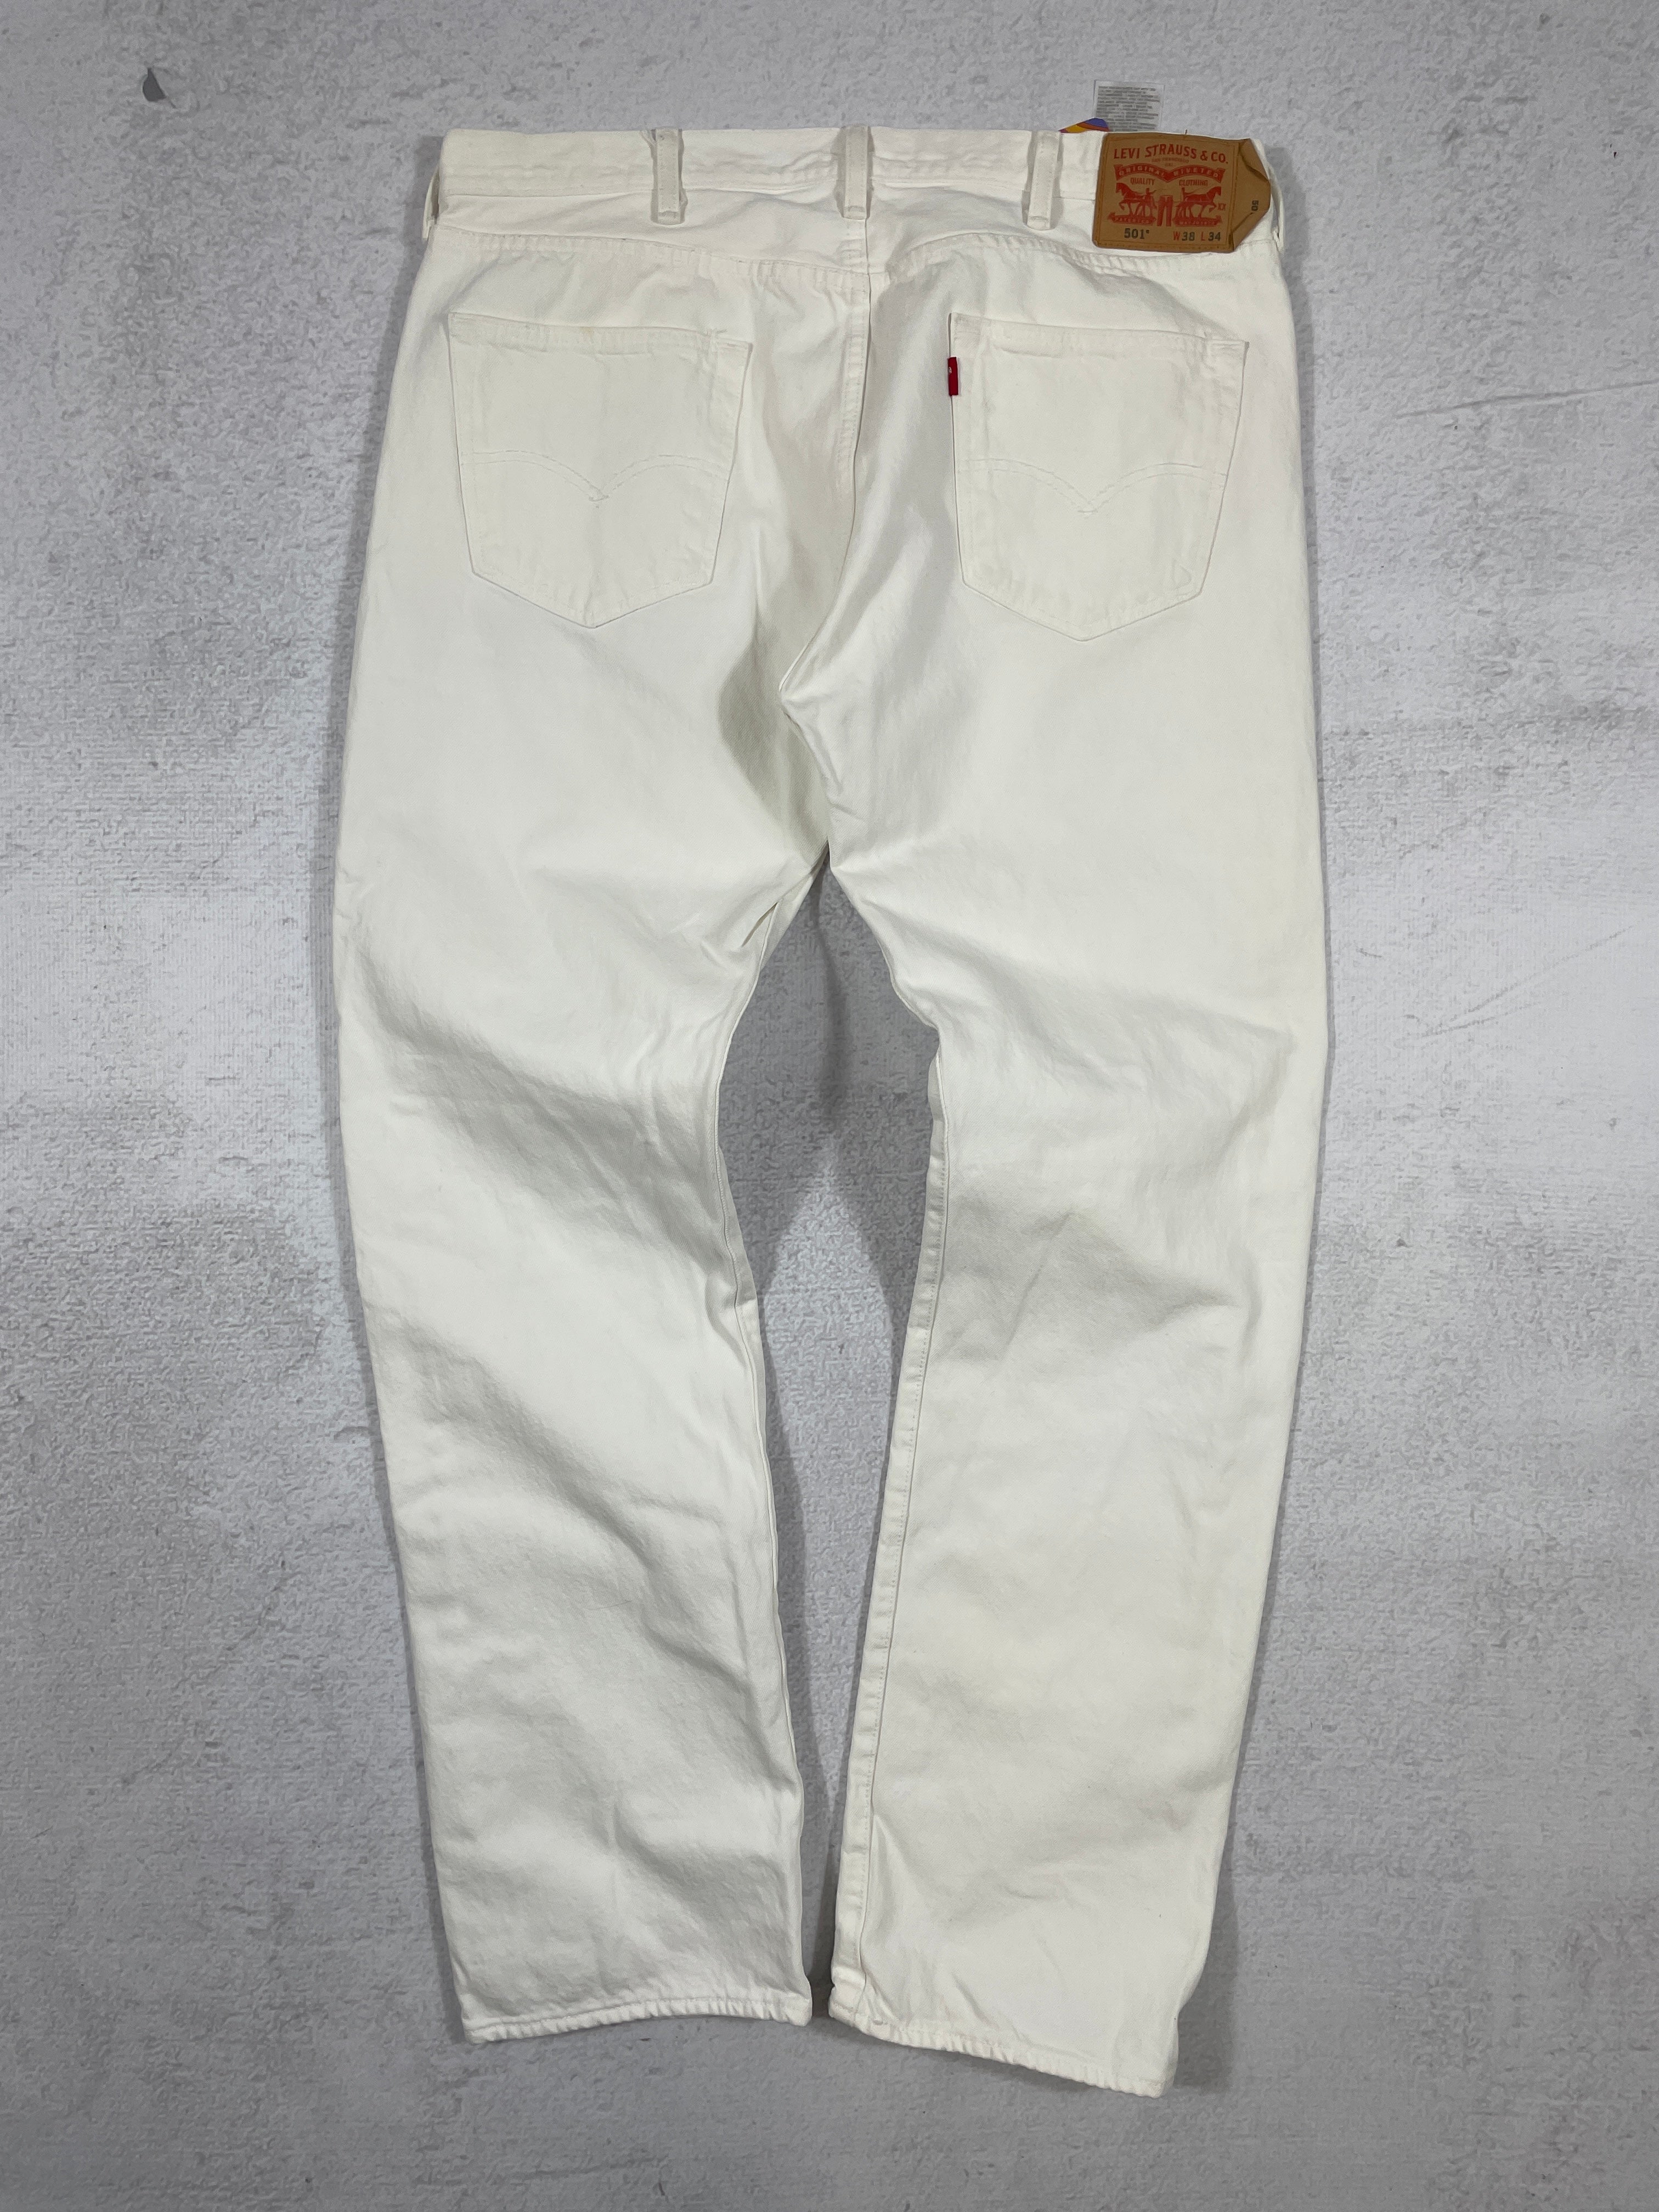 Vintage Levis 501 Jeans - Men's 38Wx34L